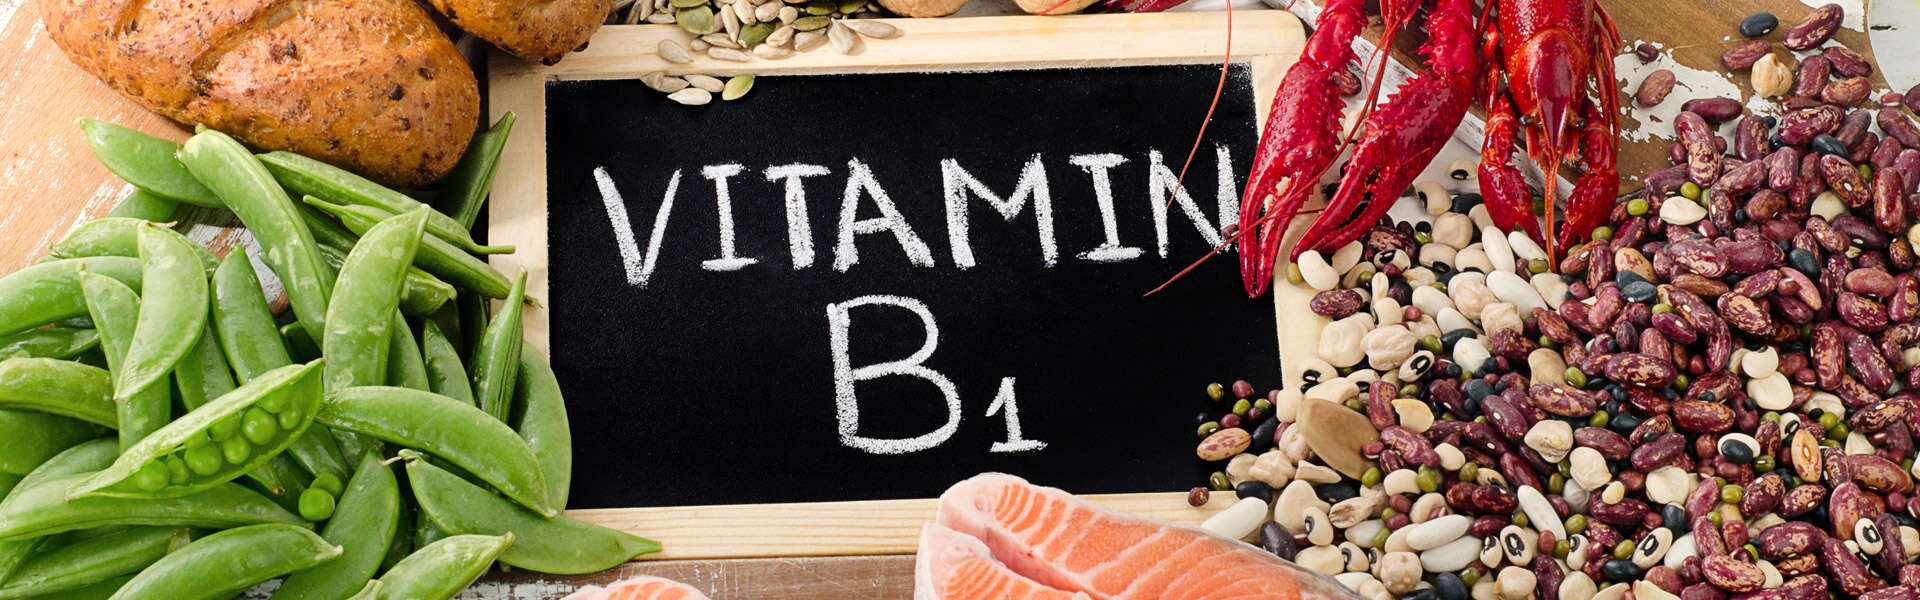 Vitamin B1 oder Thiamin: Was es ist und wofür es verwendet wird